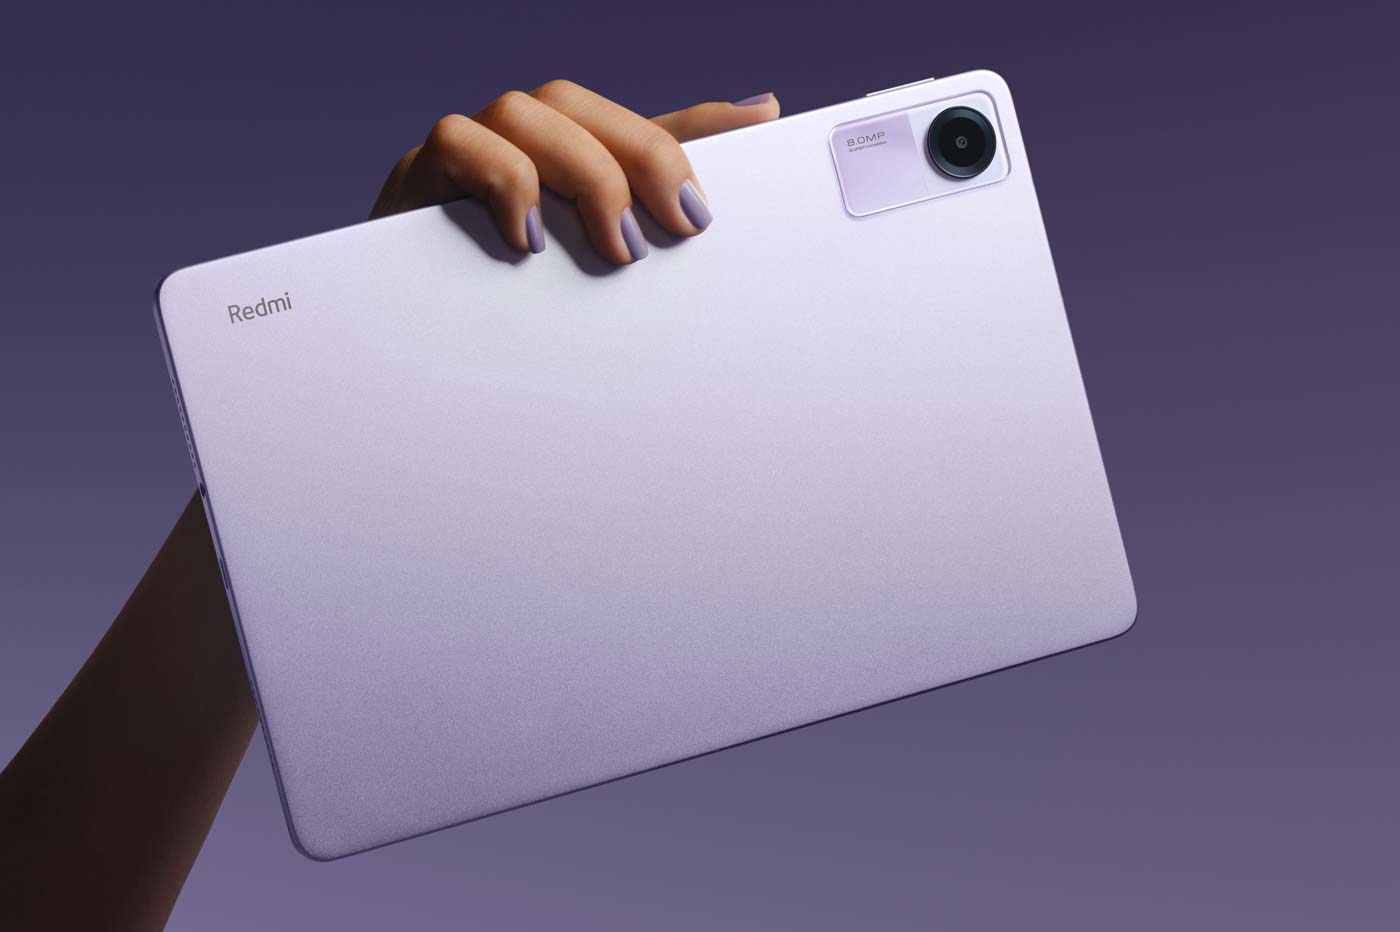 Xiaomi Redmi Pad SE : la nouvelle tablette pas cher que vous allez adorer